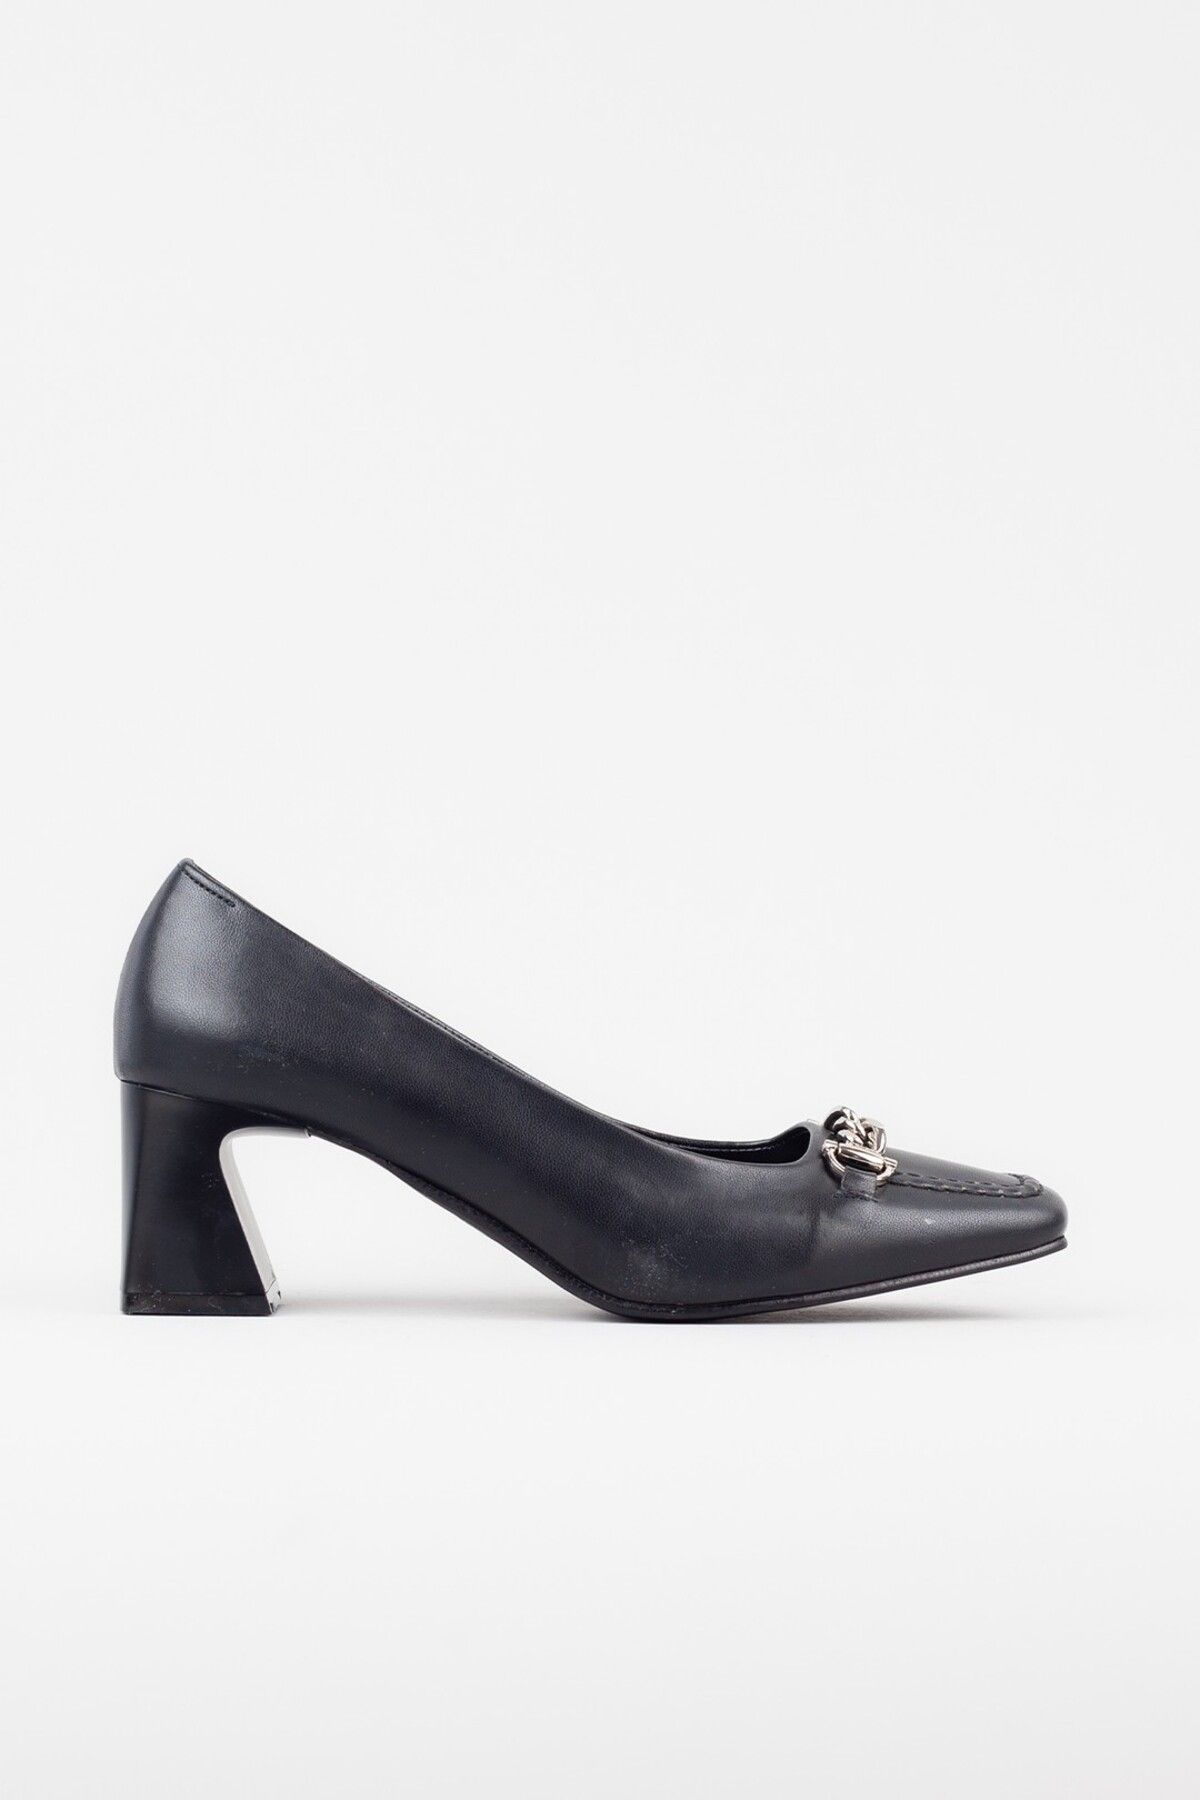 Adım Adım Kadın Zincir Detaylı Siyah Klasik Topuklu Ayakkabı